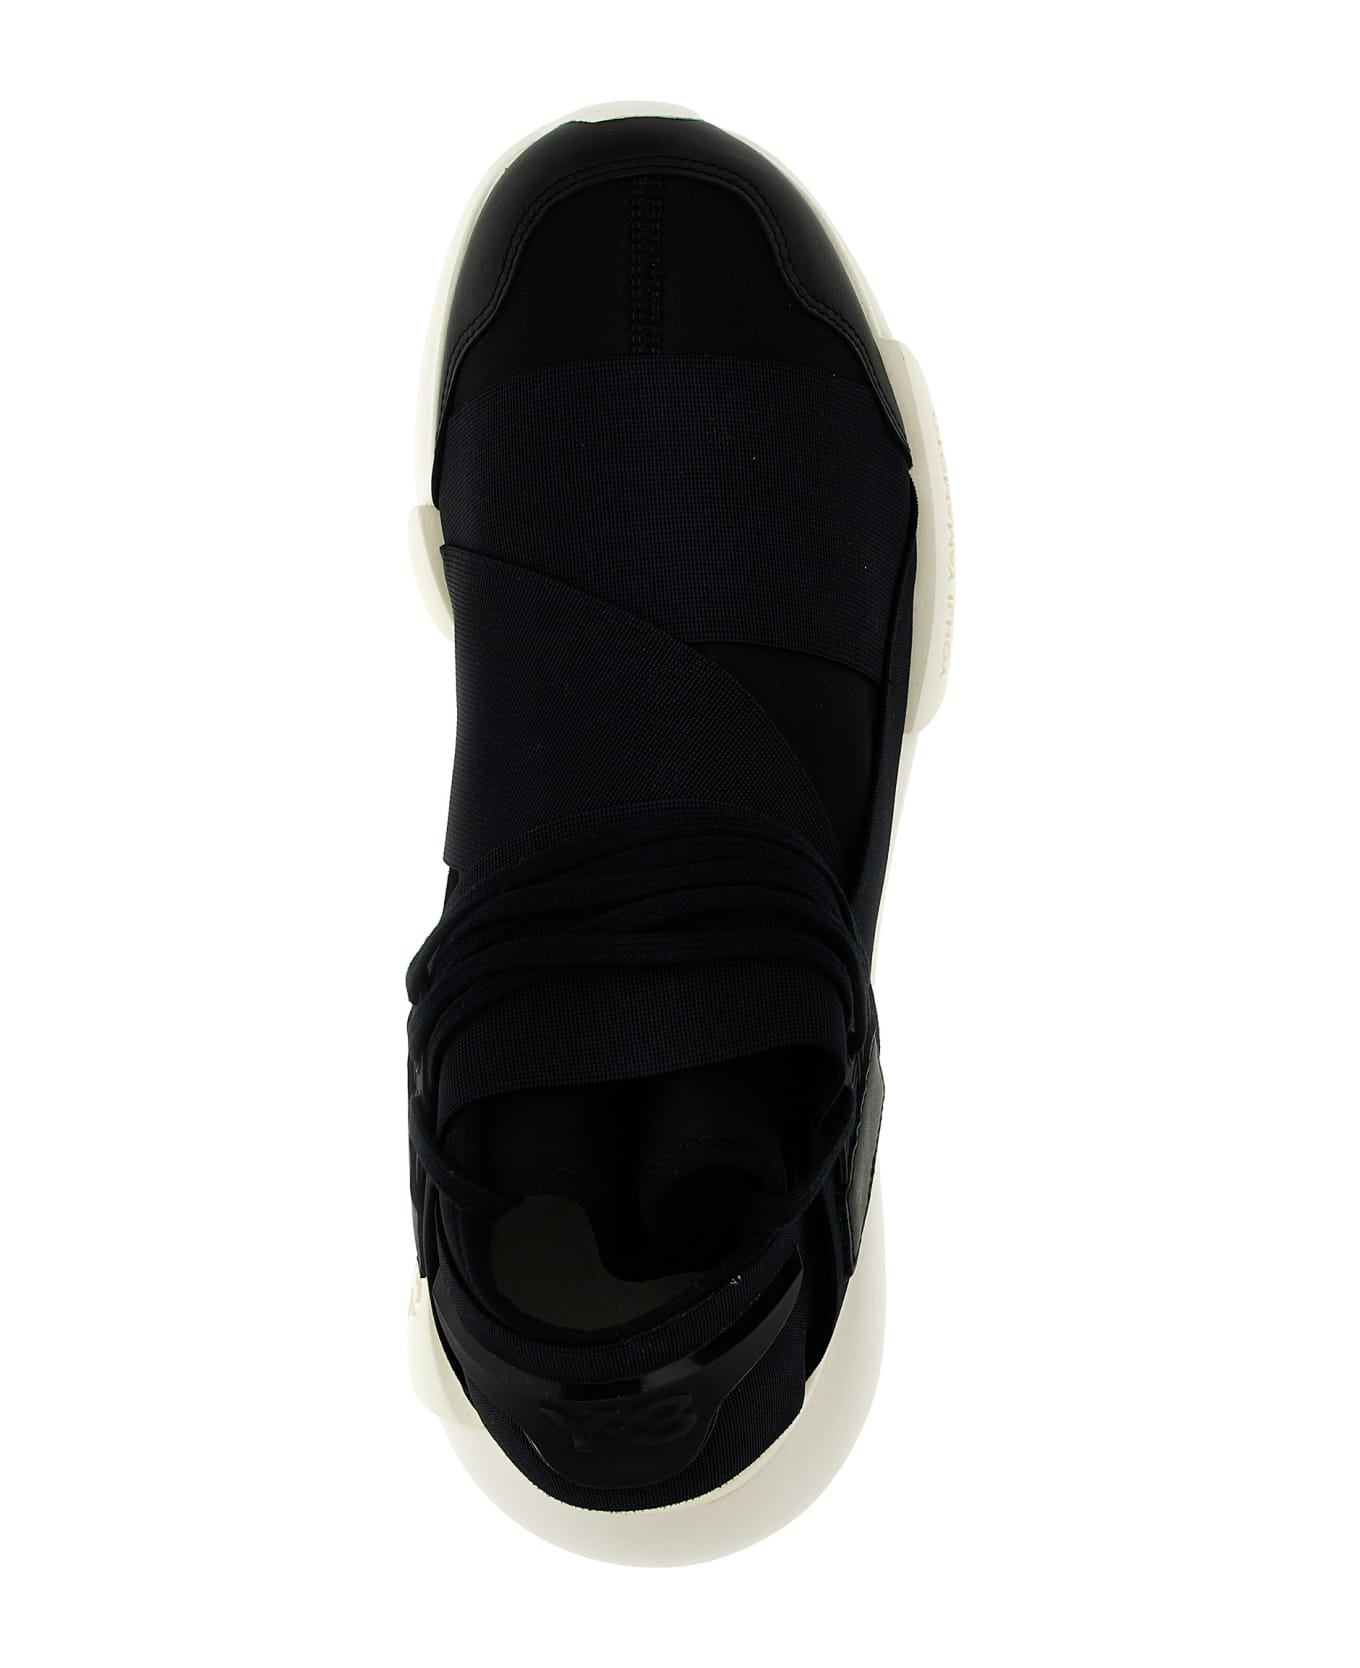 Y-3 'qasa' Sneakers - White/Black